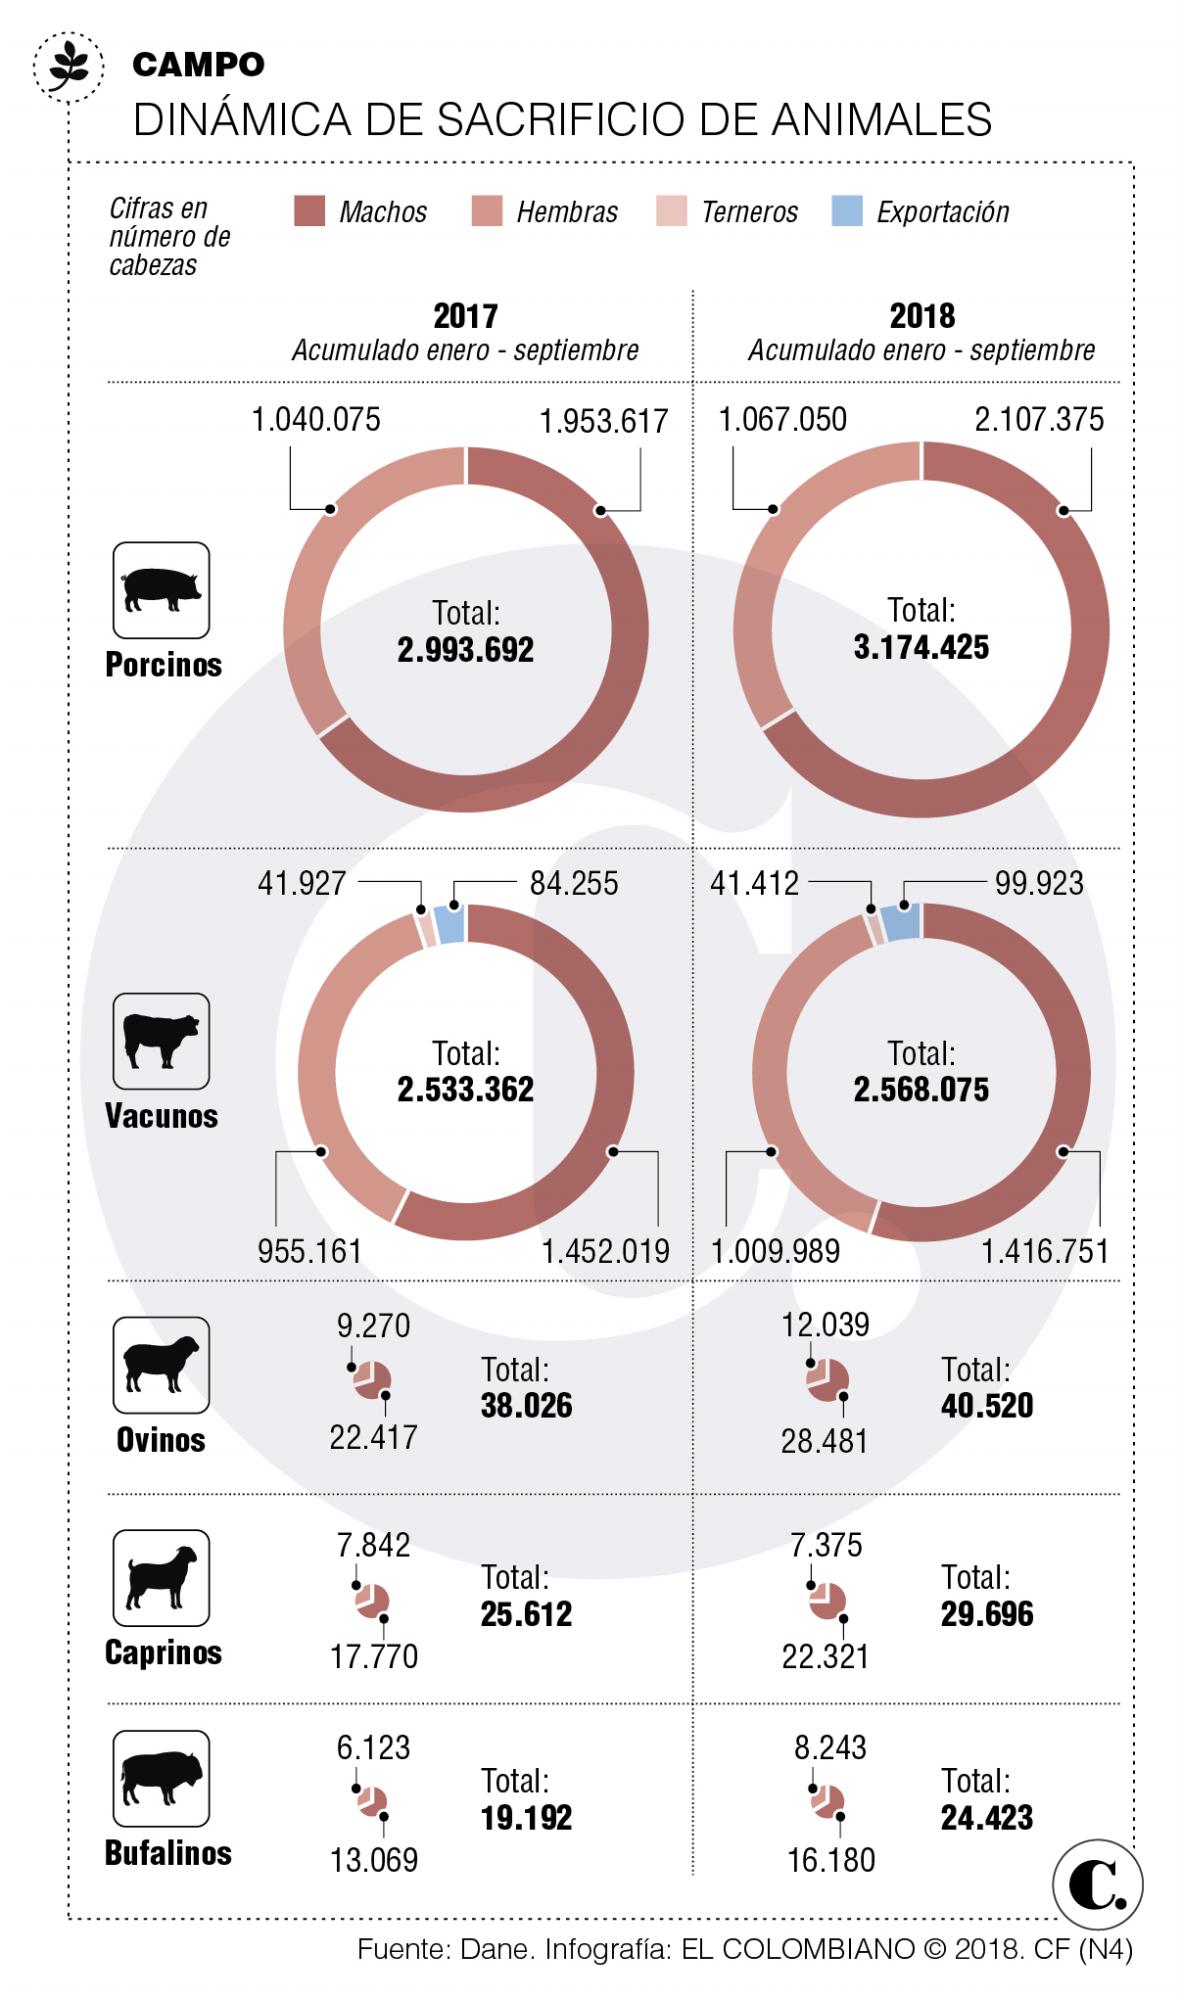 El consumo de ganado crece, pese a la aftosa